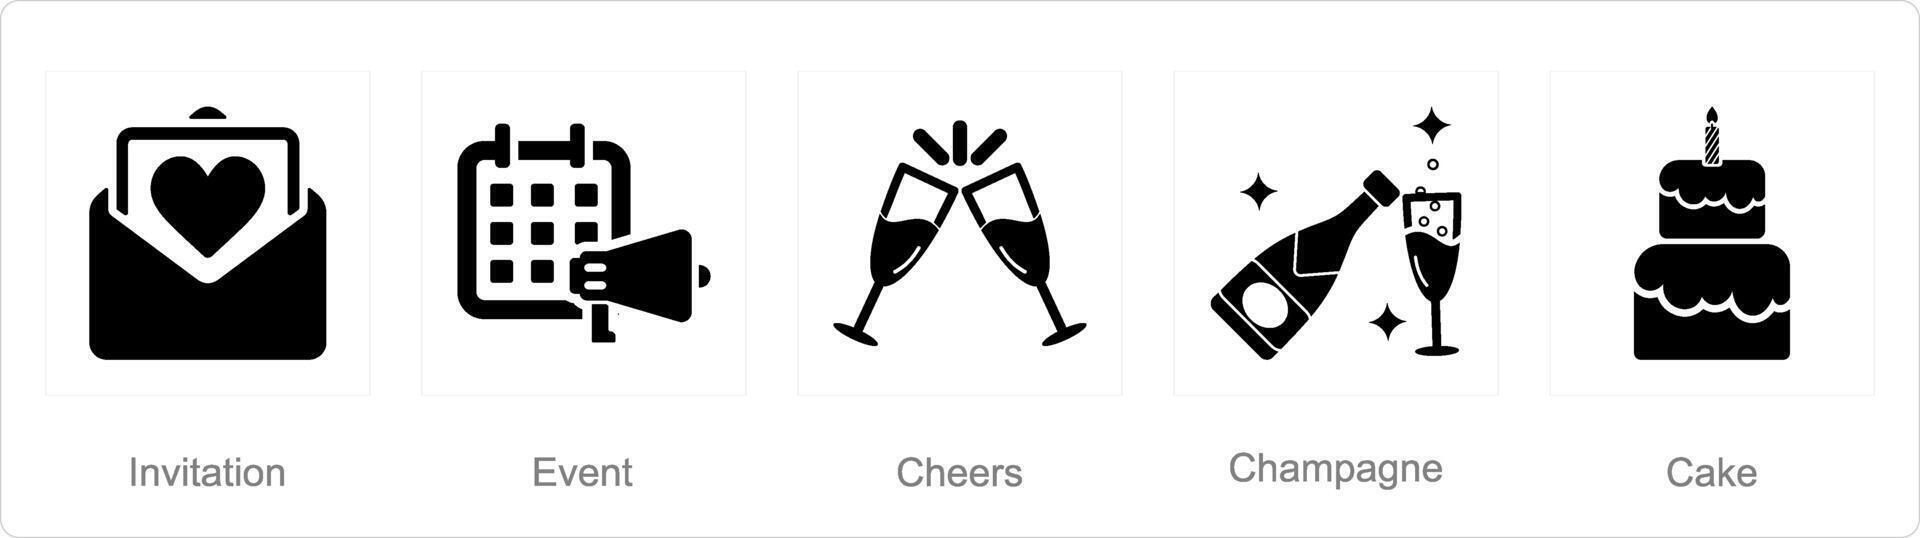 en uppsättning av 5 fira ikoner som inbjudan, händelse, Skål vektor